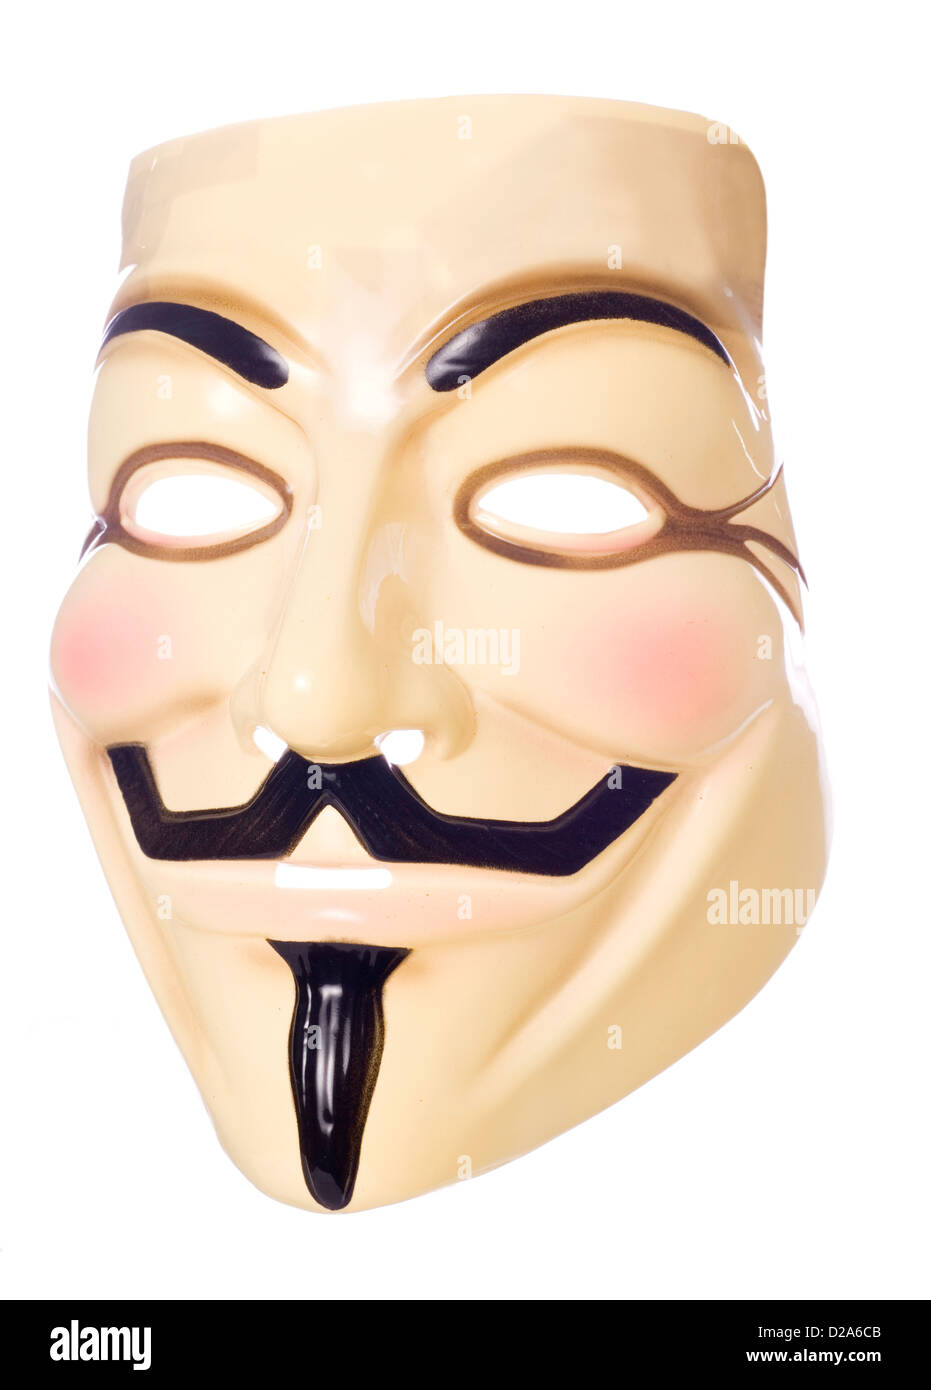 V for Vendetta halloween mask studio cutout Stock Photo